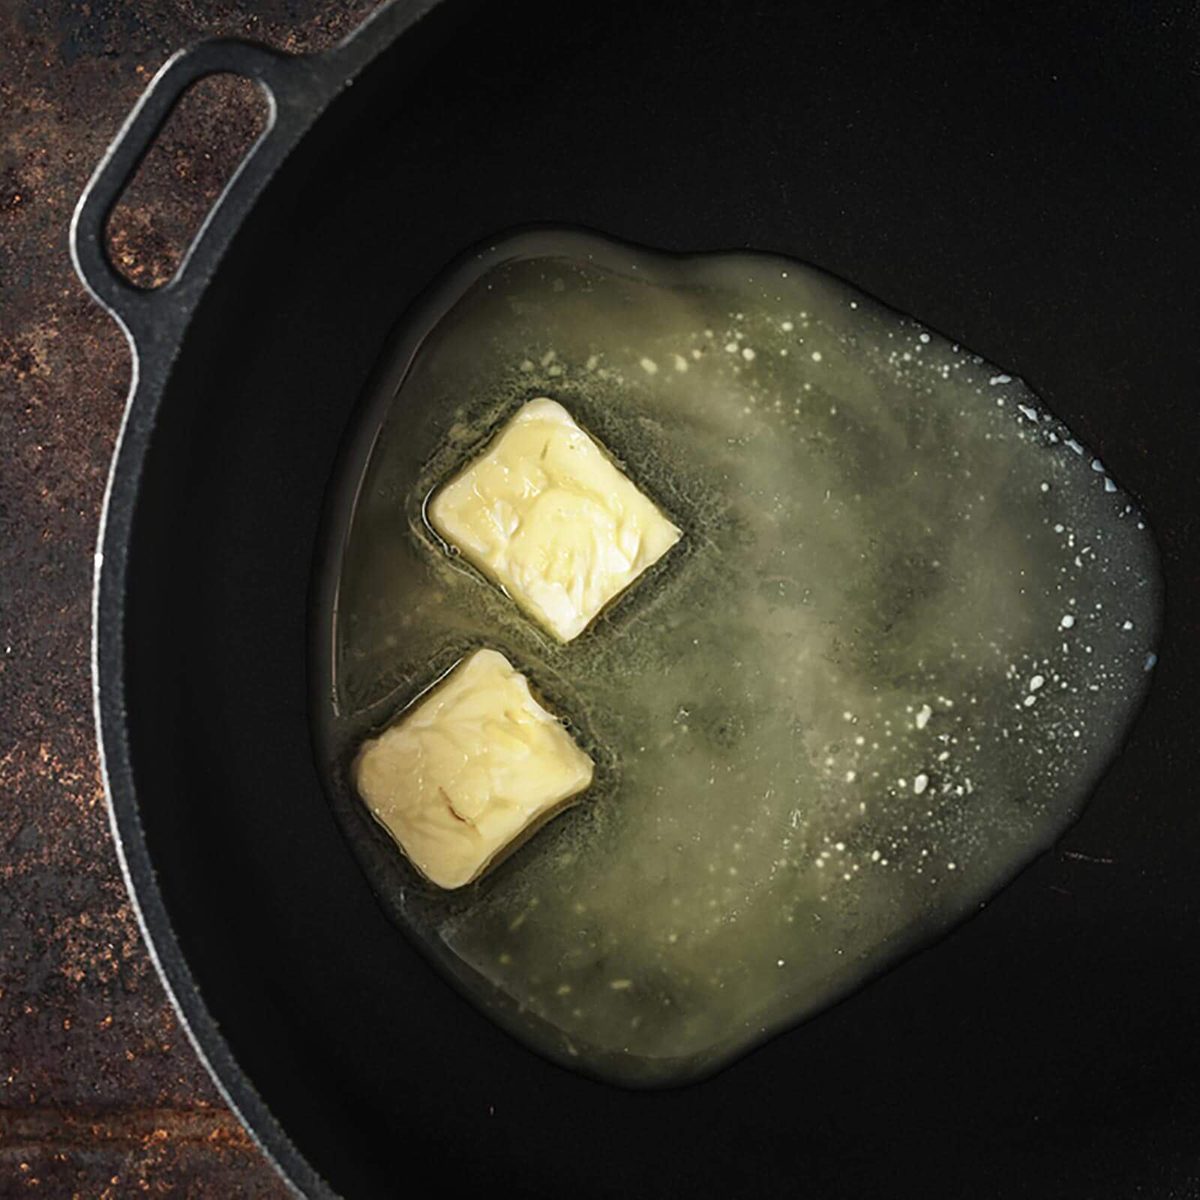 Melting butter in a skillet